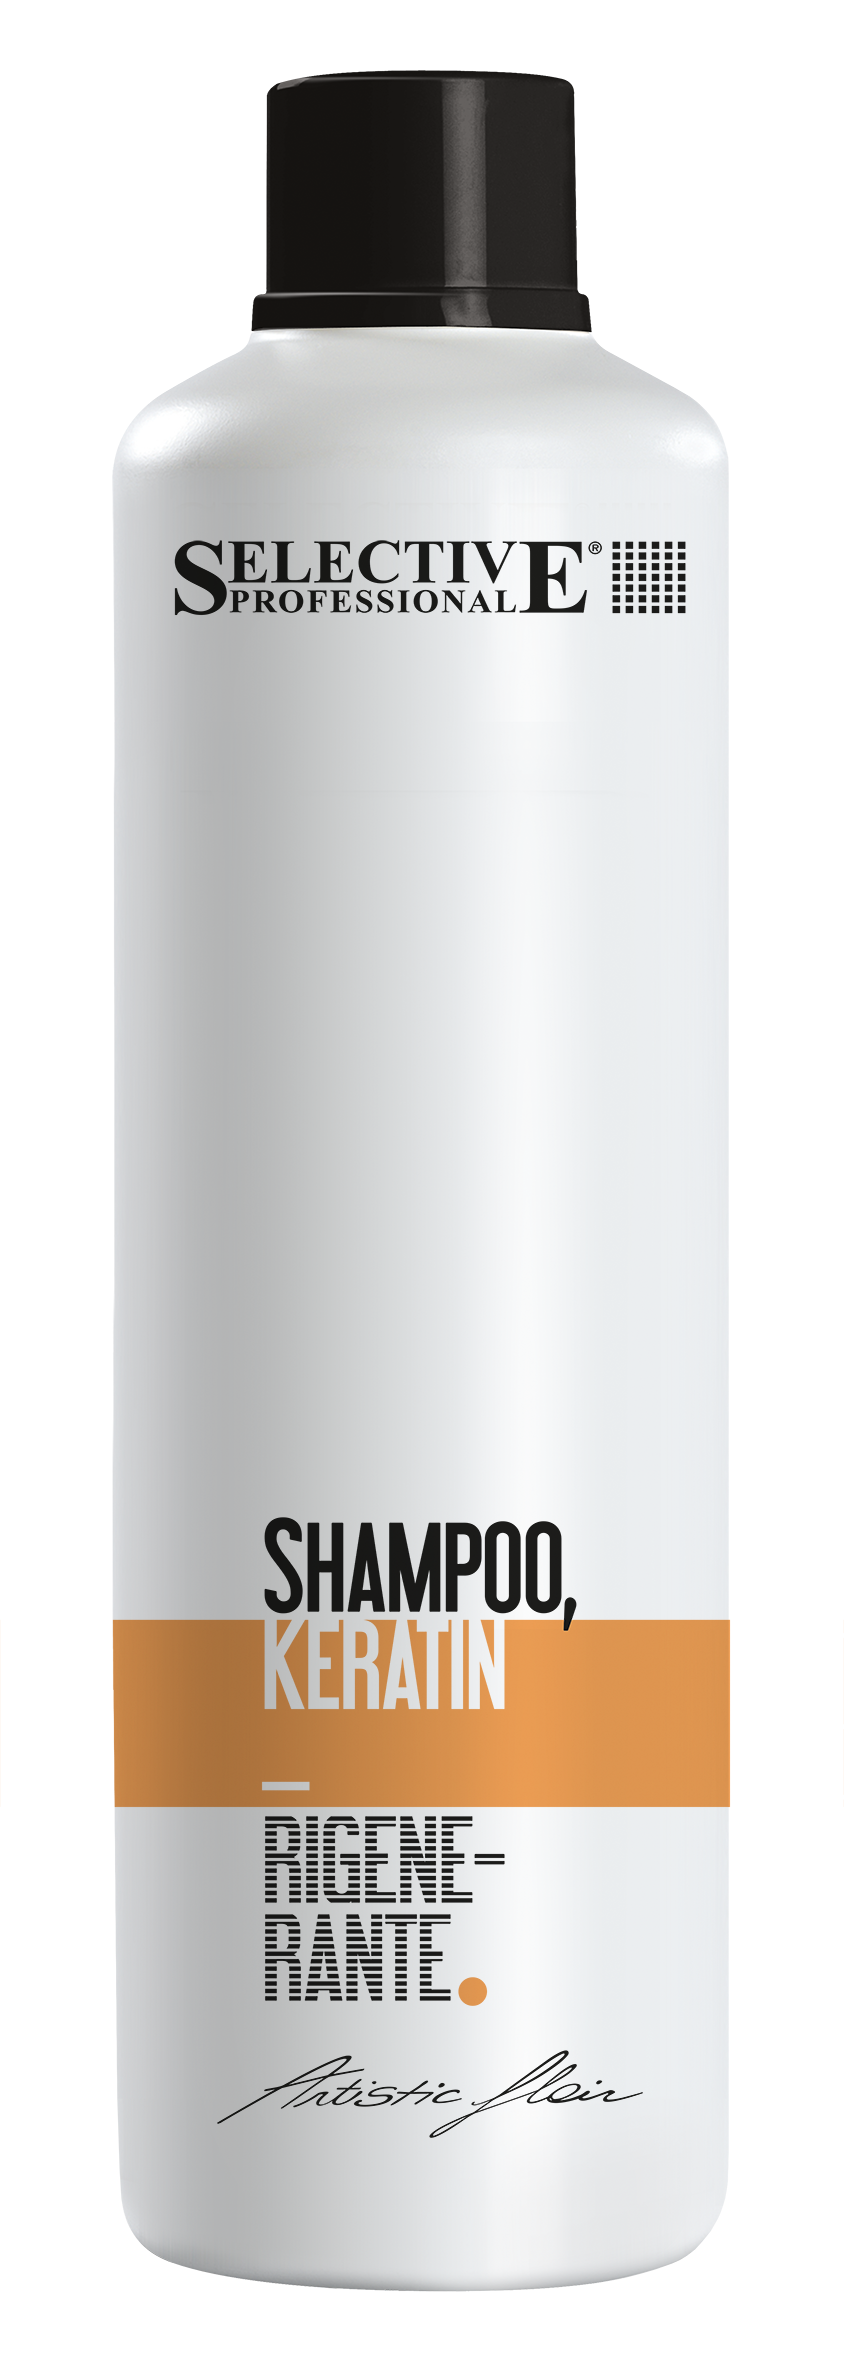 Шампуни для волос:  SELECTIVE PROFESSIONAL -  Шампунь Кератиновый для сухих и поврежденных волос  KERATIN  (1000 мл)